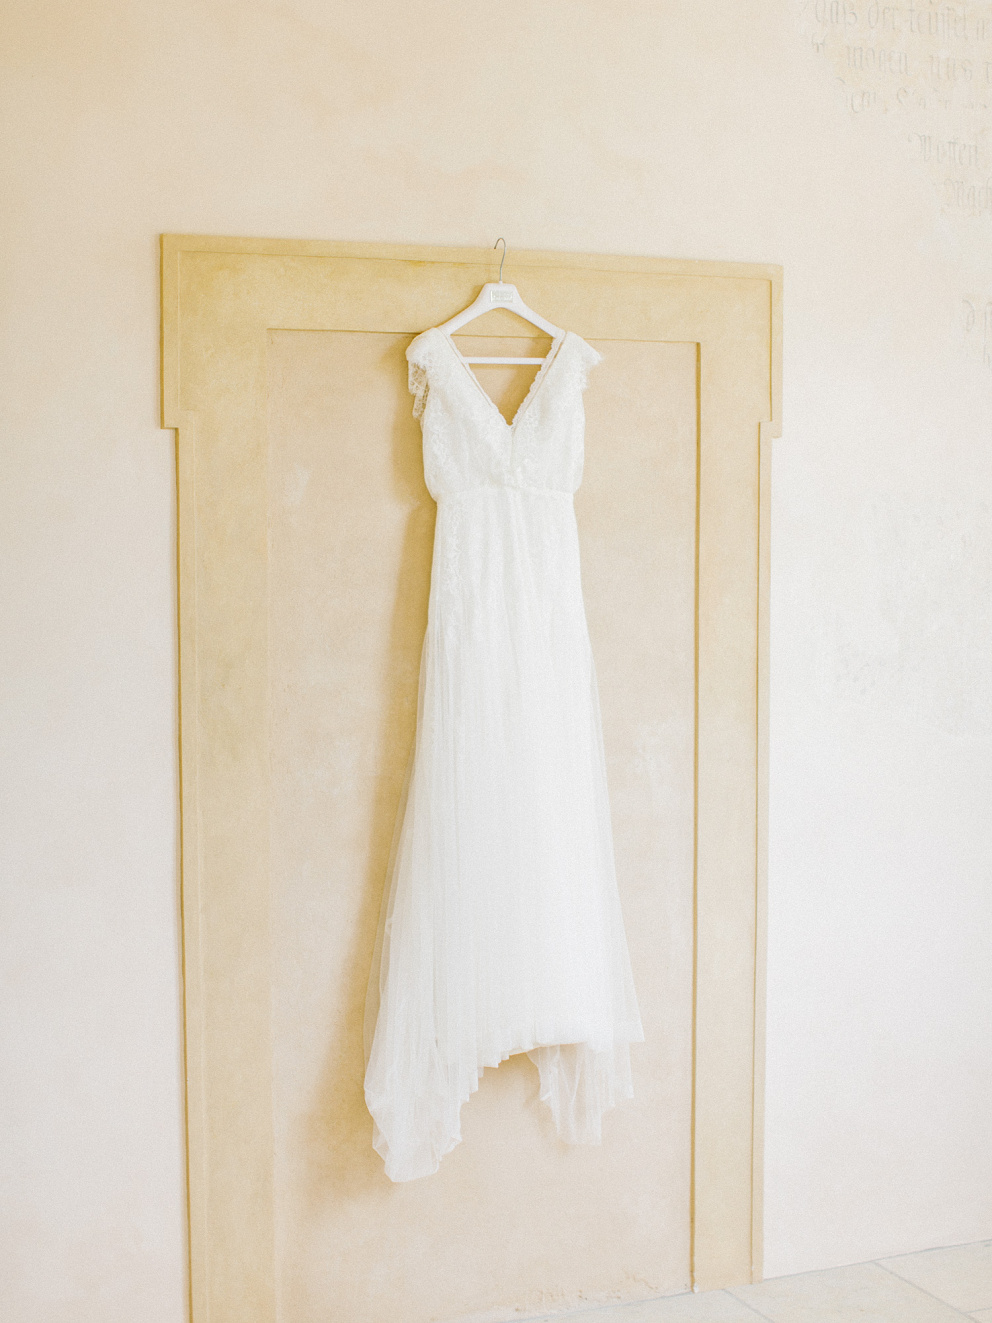 Šaty ze svatebního salonu Nuance byly láska na první pohled!
